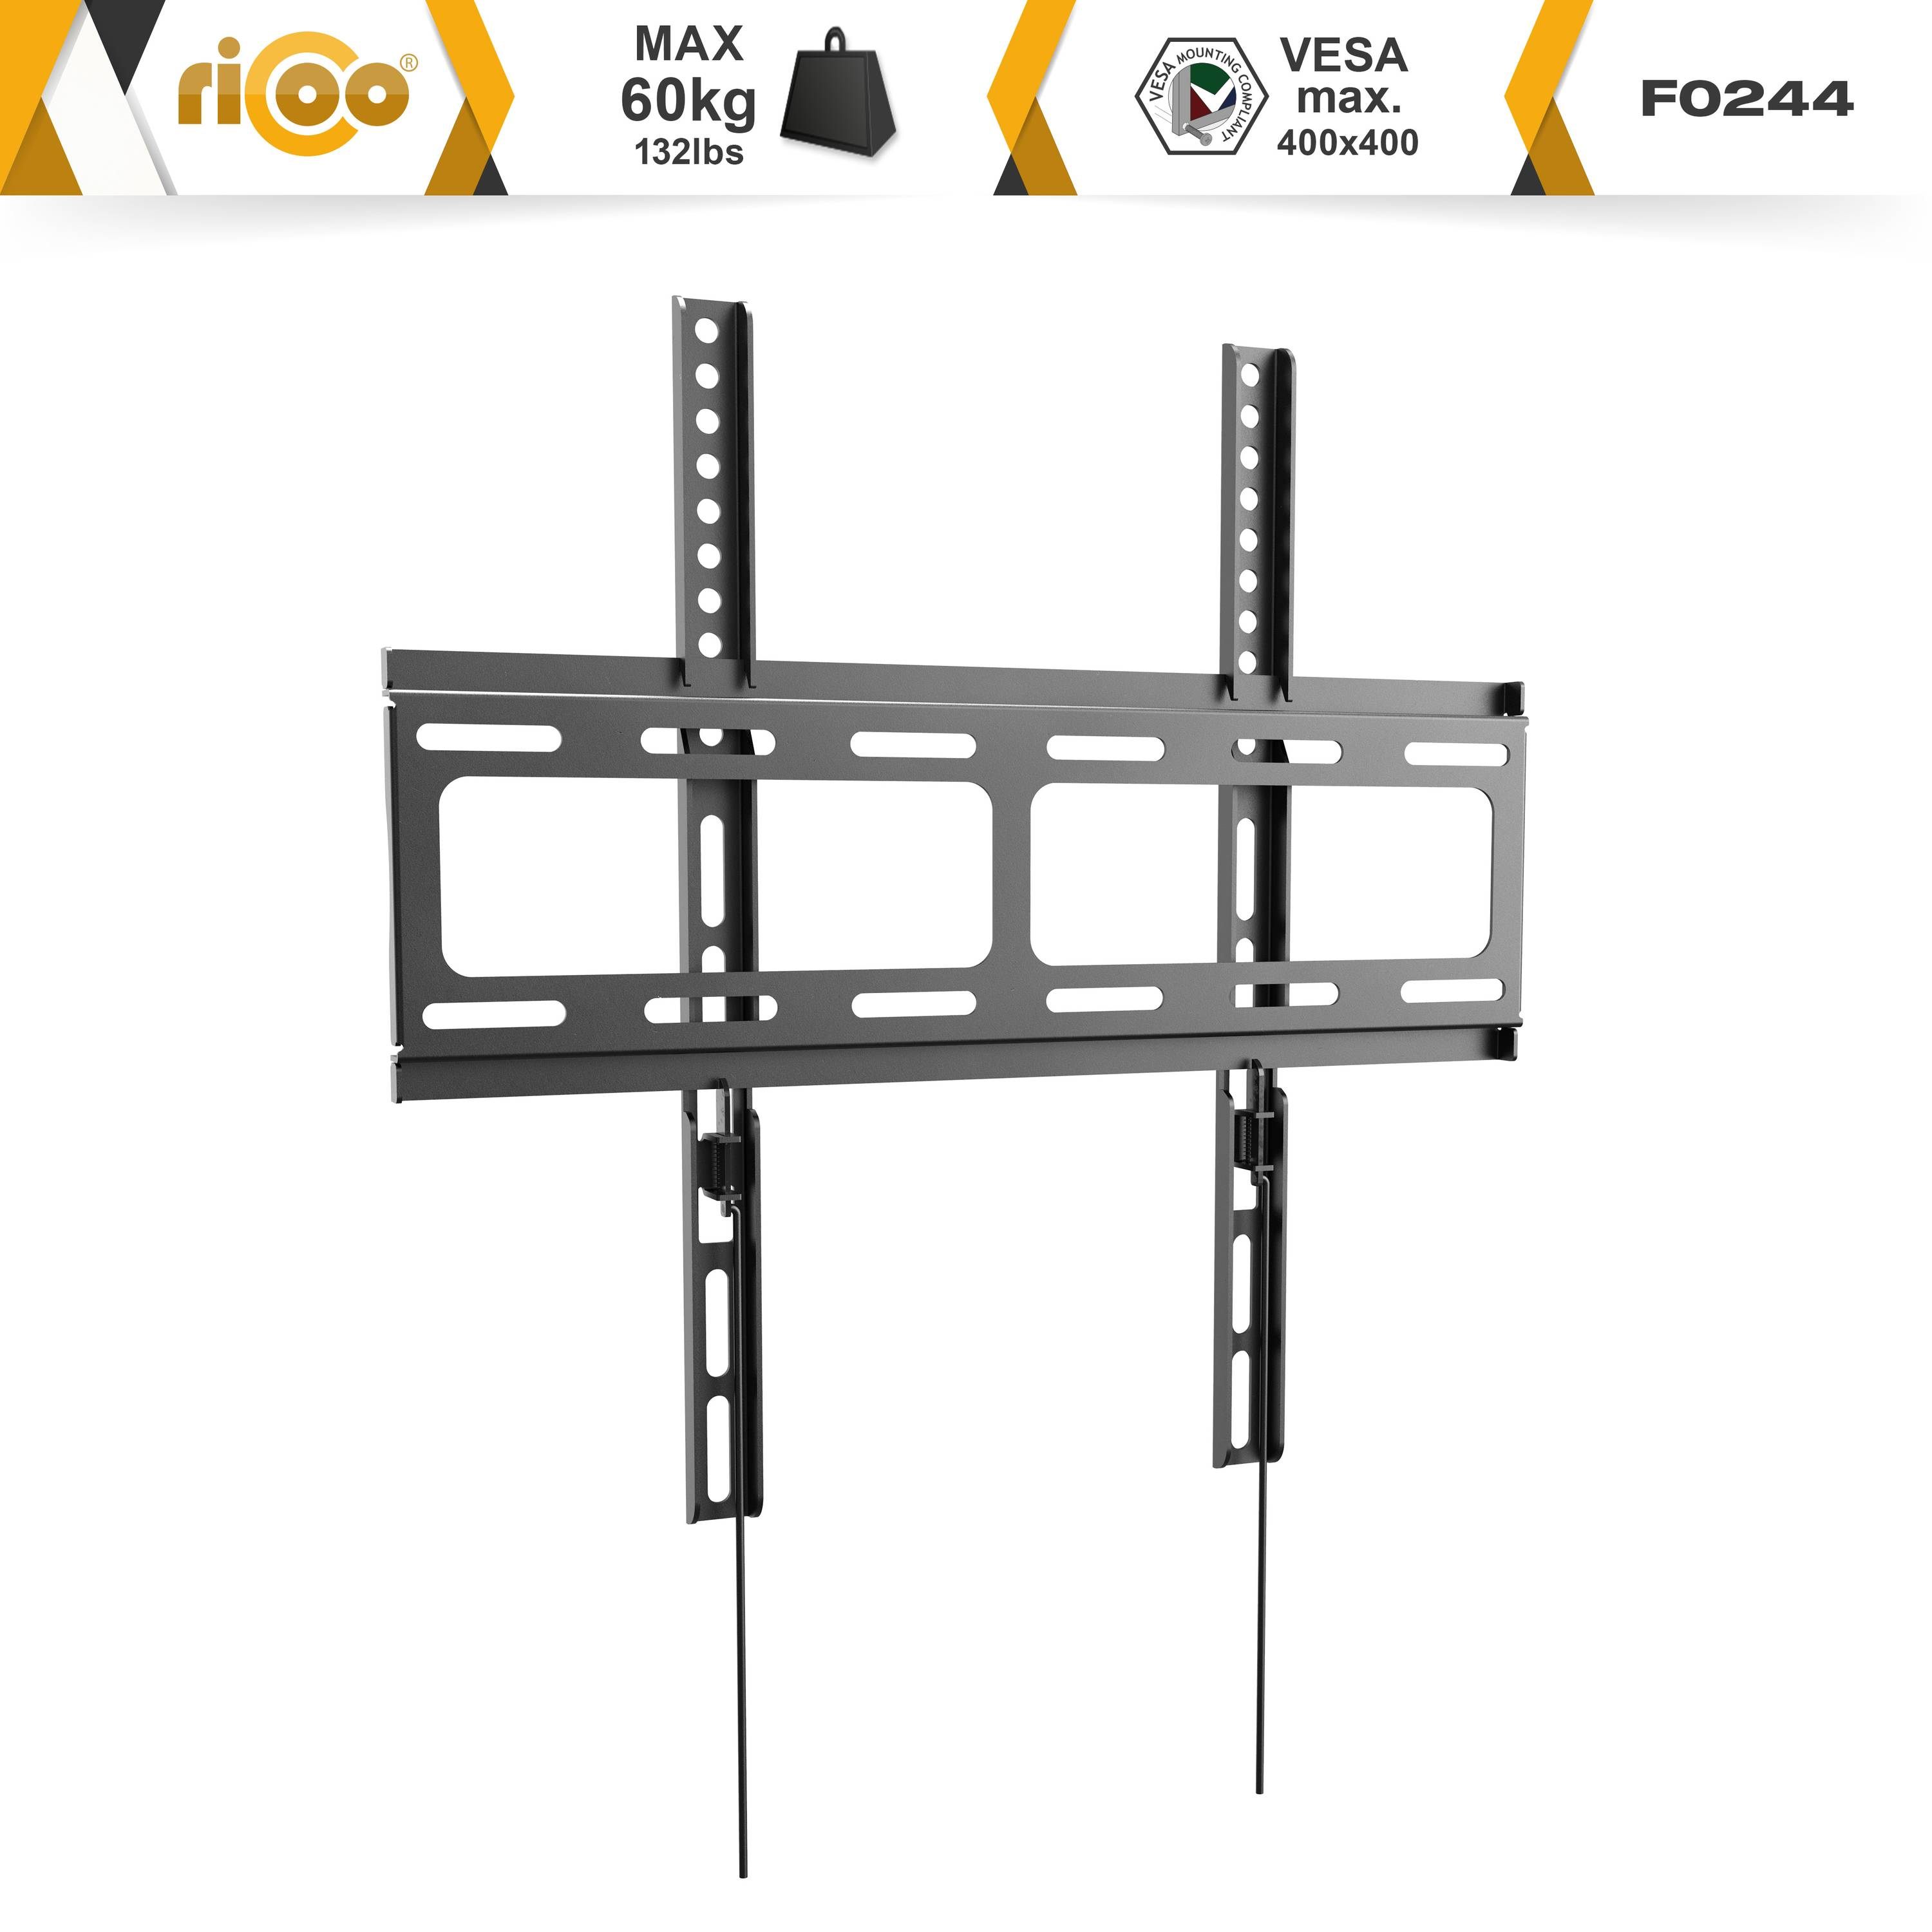 RICOO F0244 flach auch für Wand x Fernseher Schwarz 400 TV Halterung universal bis Wandhalterung, VESA 400 curved